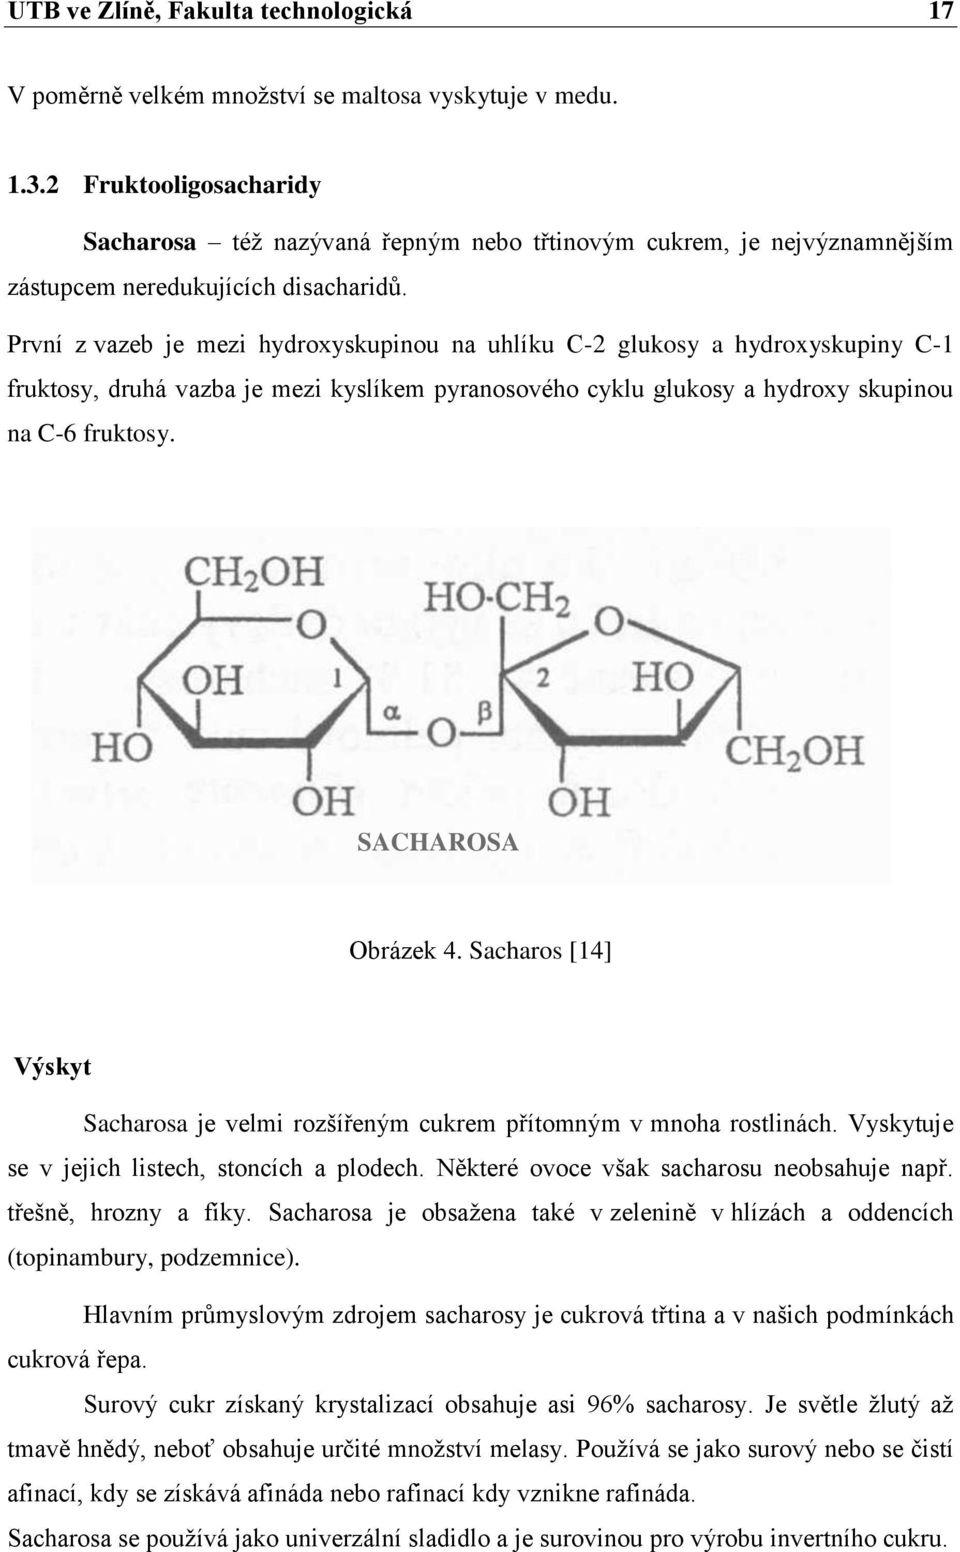 První z vazeb je mezi hydroxyskupinou na uhlíku C-2 glukosy a hydroxyskupiny C-1 fruktosy, druhá vazba je mezi kyslíkem pyranosového cyklu glukosy a hydroxy skupinou na C-6 fruktosy.